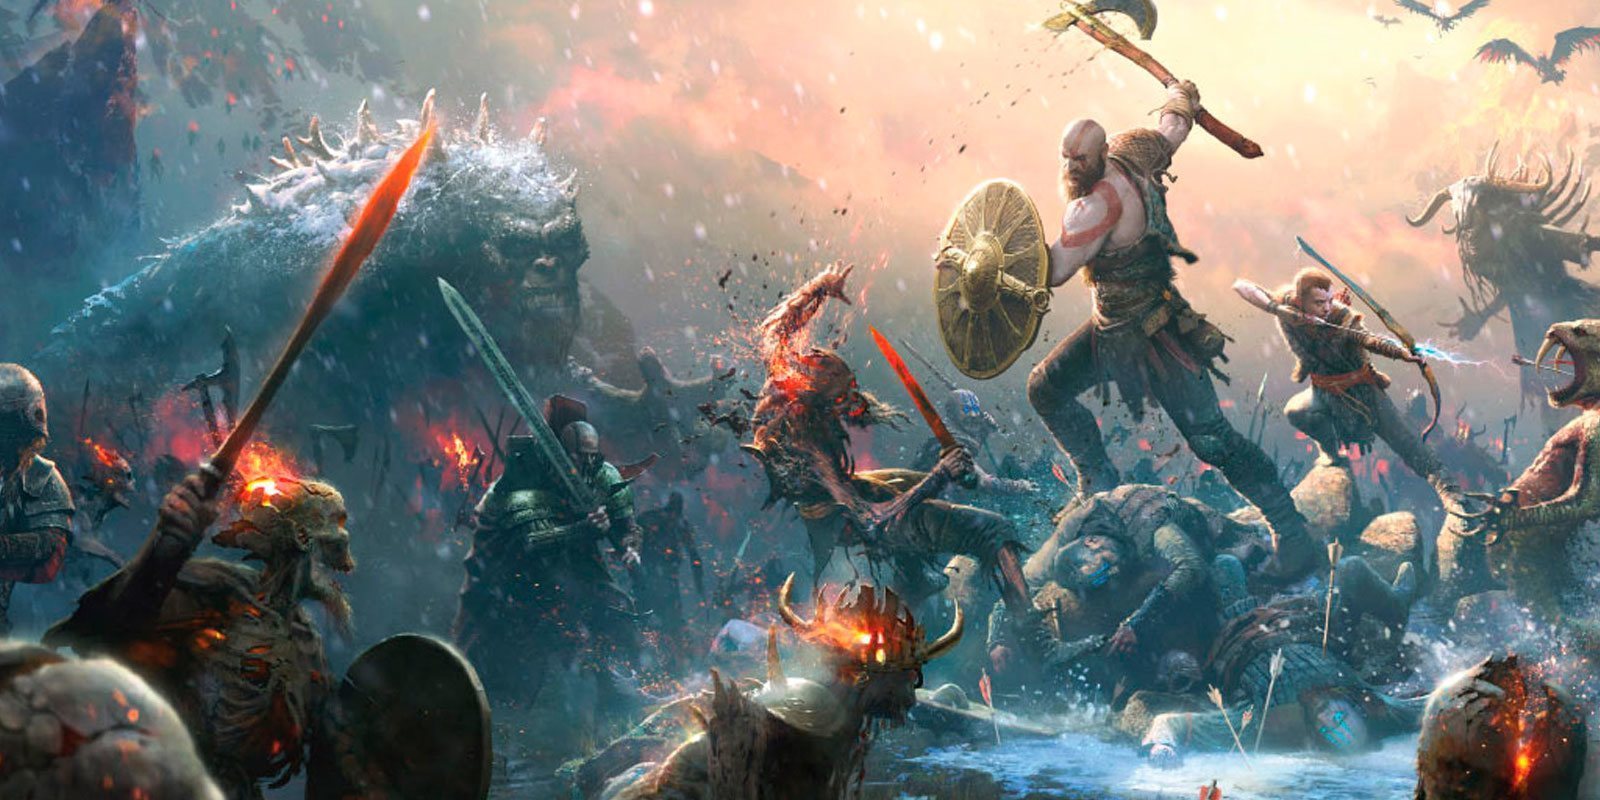 El director de 'God of War' quiere llevar a cabo un juego completamente original